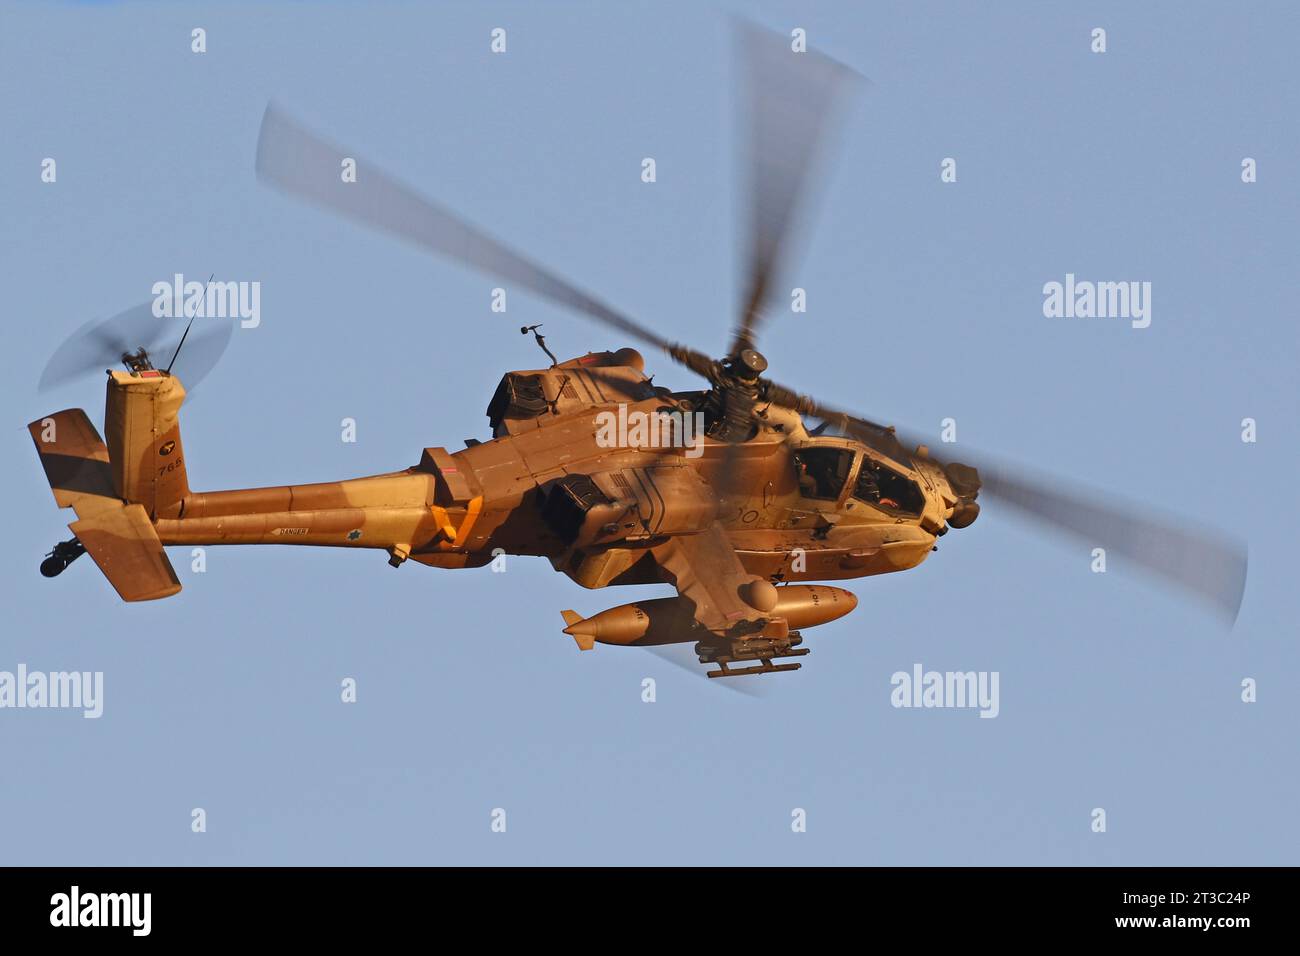 Helicóptero AH-64D Saraf de la Fuerza Aérea israelí armado con misiles Hellfire de práctica. Foto de stock